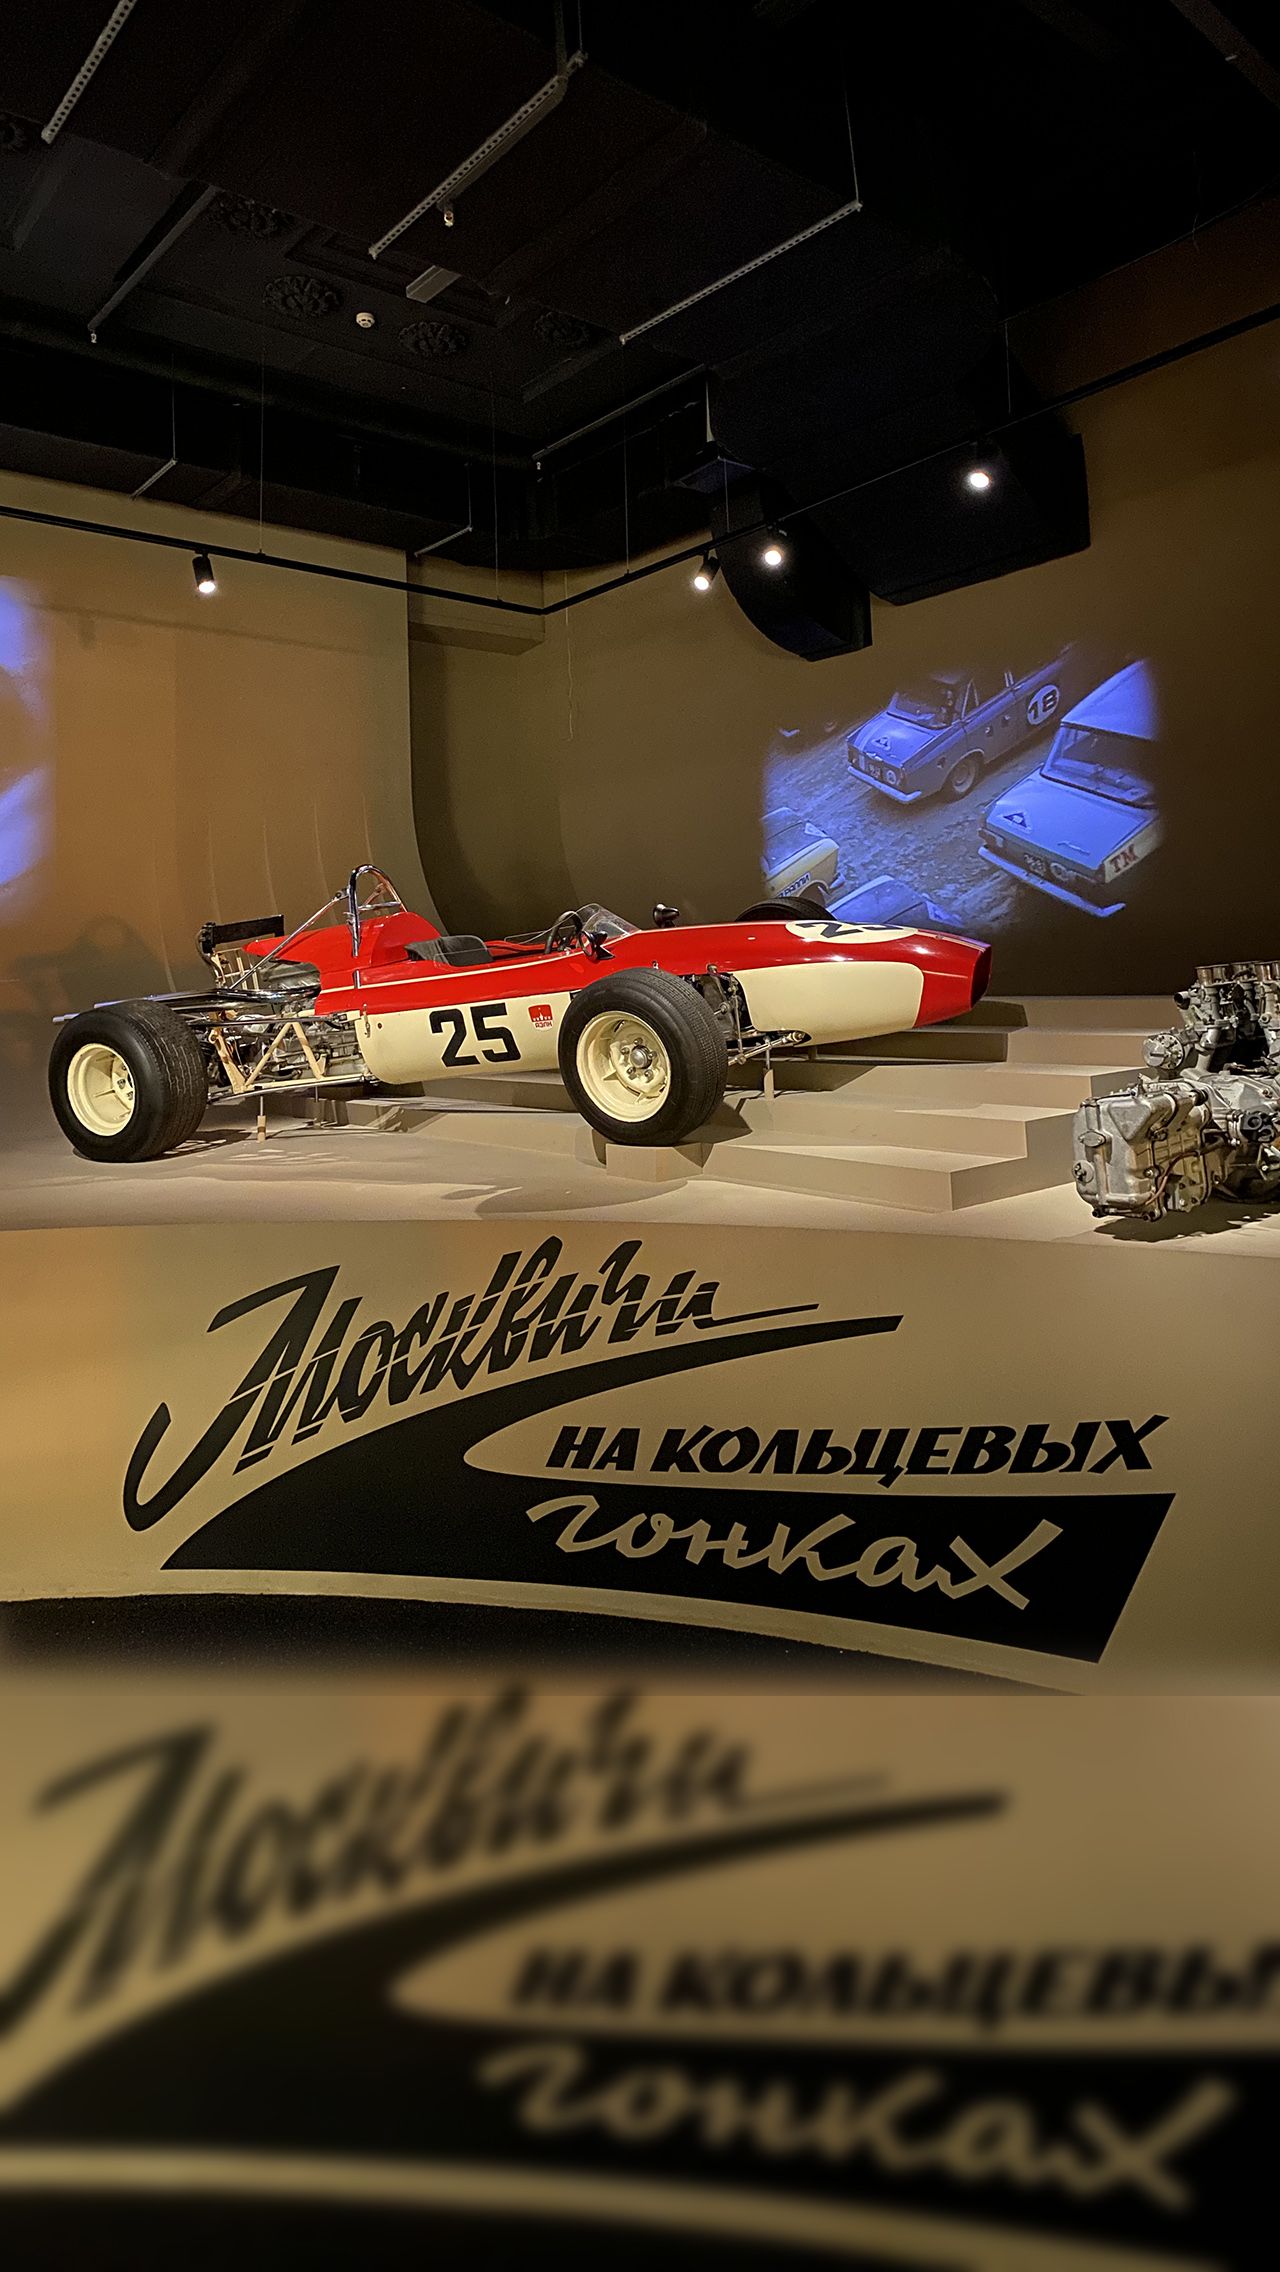 Мало того, «Москвич» готовил даже свой мотор для Ф-1! Правда, проект быстро заглох, но болид «Москвич-Г5» для советского турнира всё-таки построили.